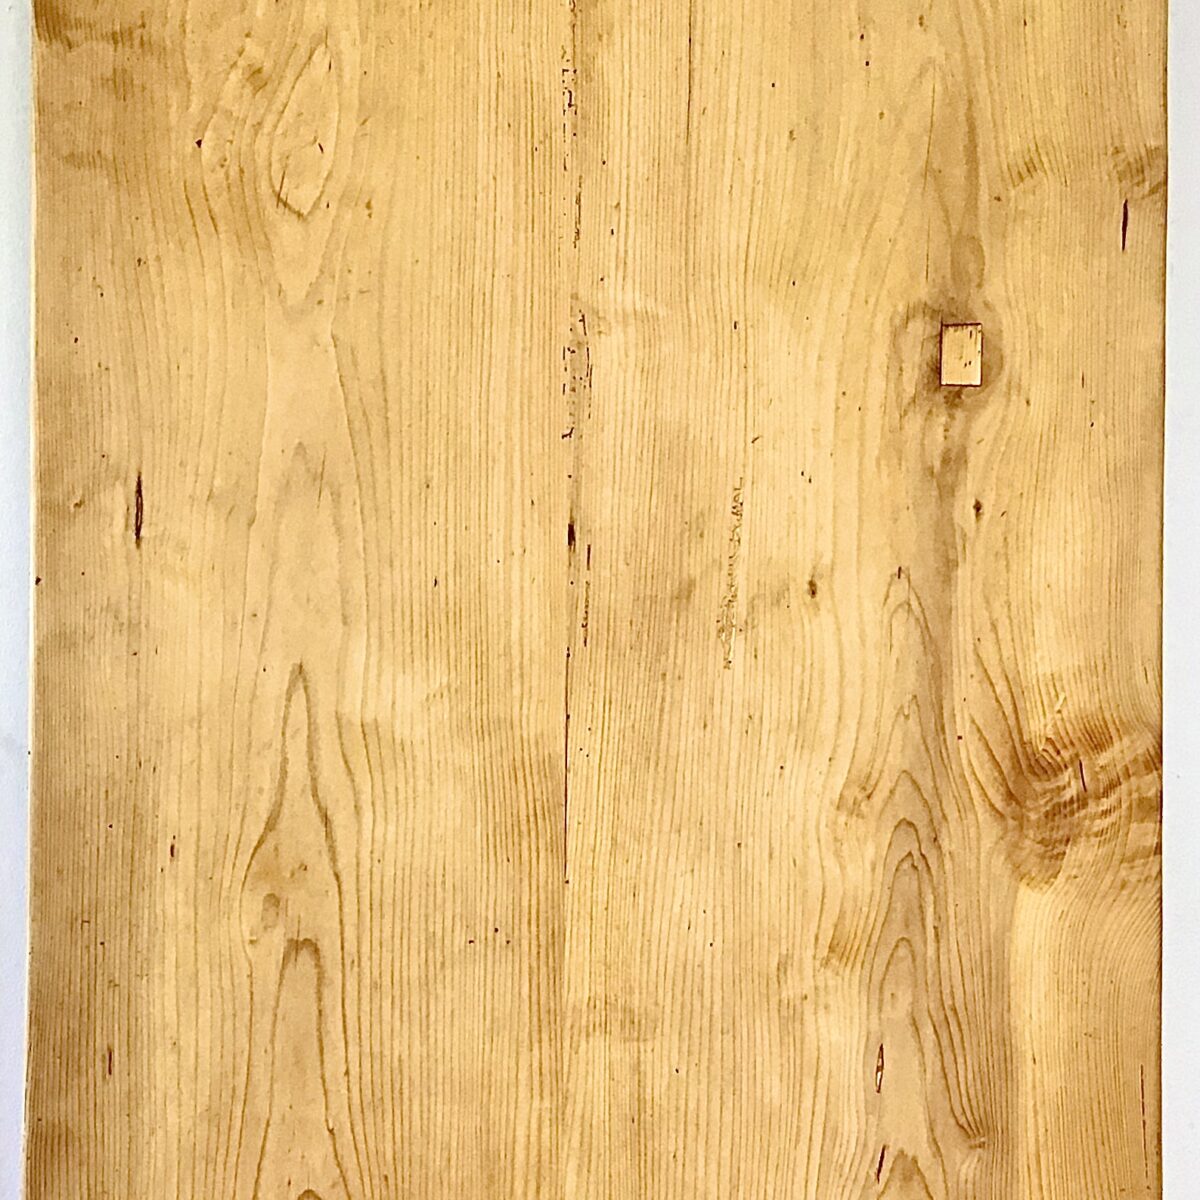 Frisch Aufbereiteter Biedermeiertisch aus Tannenholz. 232x88cm Höhe 77cm. Dieser Esstisch zeichnet sich durch seine praktische Grösse aus, vorallem die grosszügige Tiefe von 88cm ist bei den alten Biedermeier Tischen schwieriger zu finden. Auch das Tischblatt, bestehend aus nur zwei breiten Brettern, hat einen gewissen Seltenheitswert. Auf der Unterseite ist deutlich das Alter zu sehen, durch die Handgehobelte Struktur. Die Holzoberflächen sind mit Naturöl behandelt.